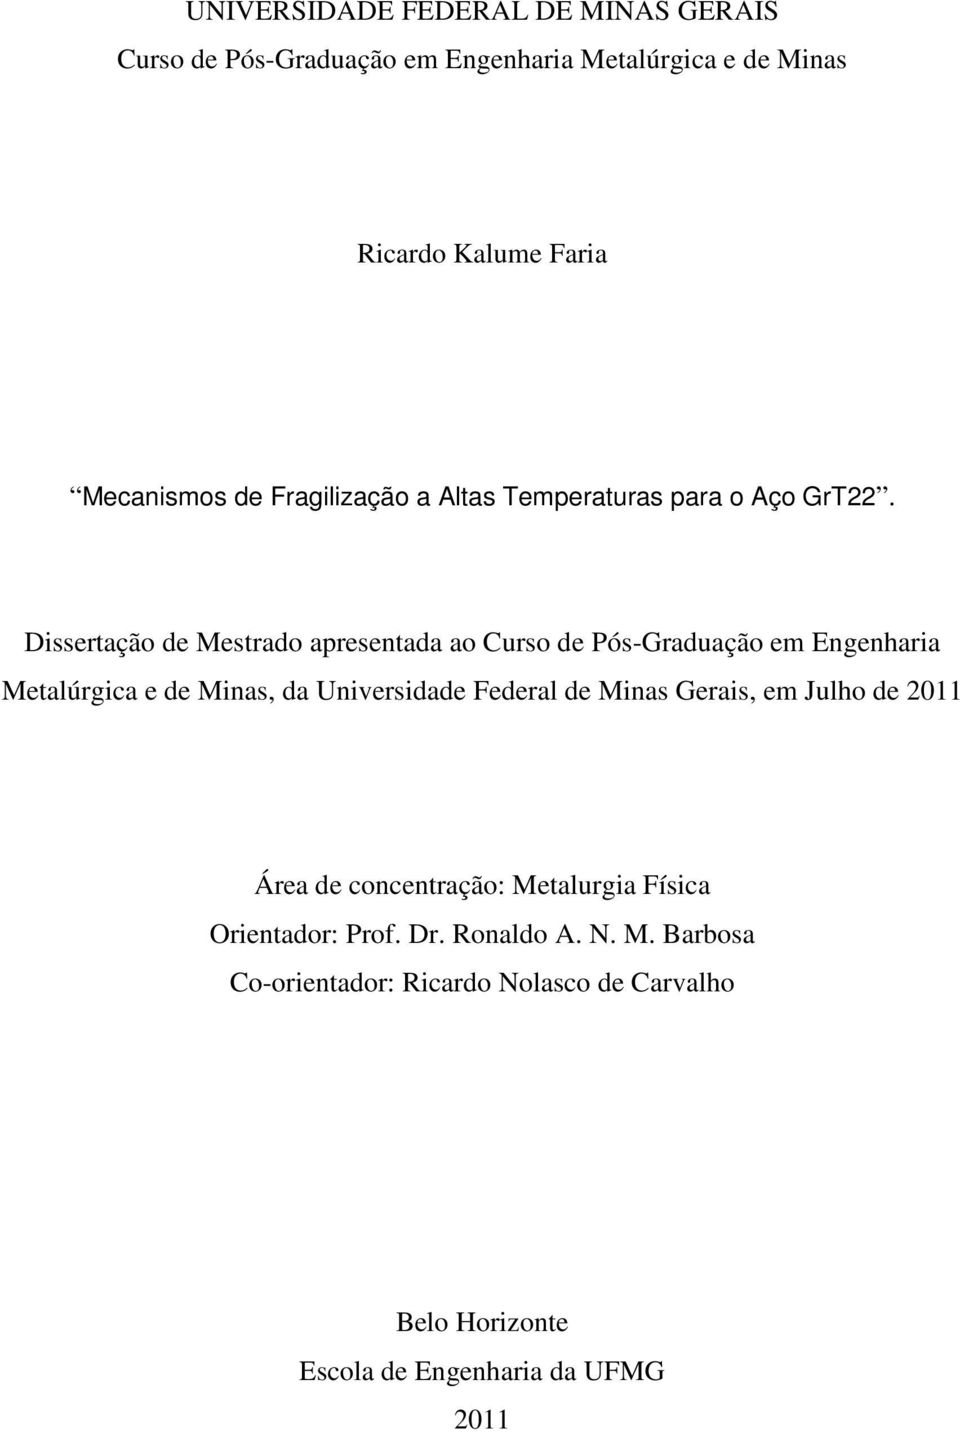 Dissertação de Mestrado apresentada ao Curso de Pós-Graduação em Engenharia Metalúrgica e de Minas, da Universidade Federal de